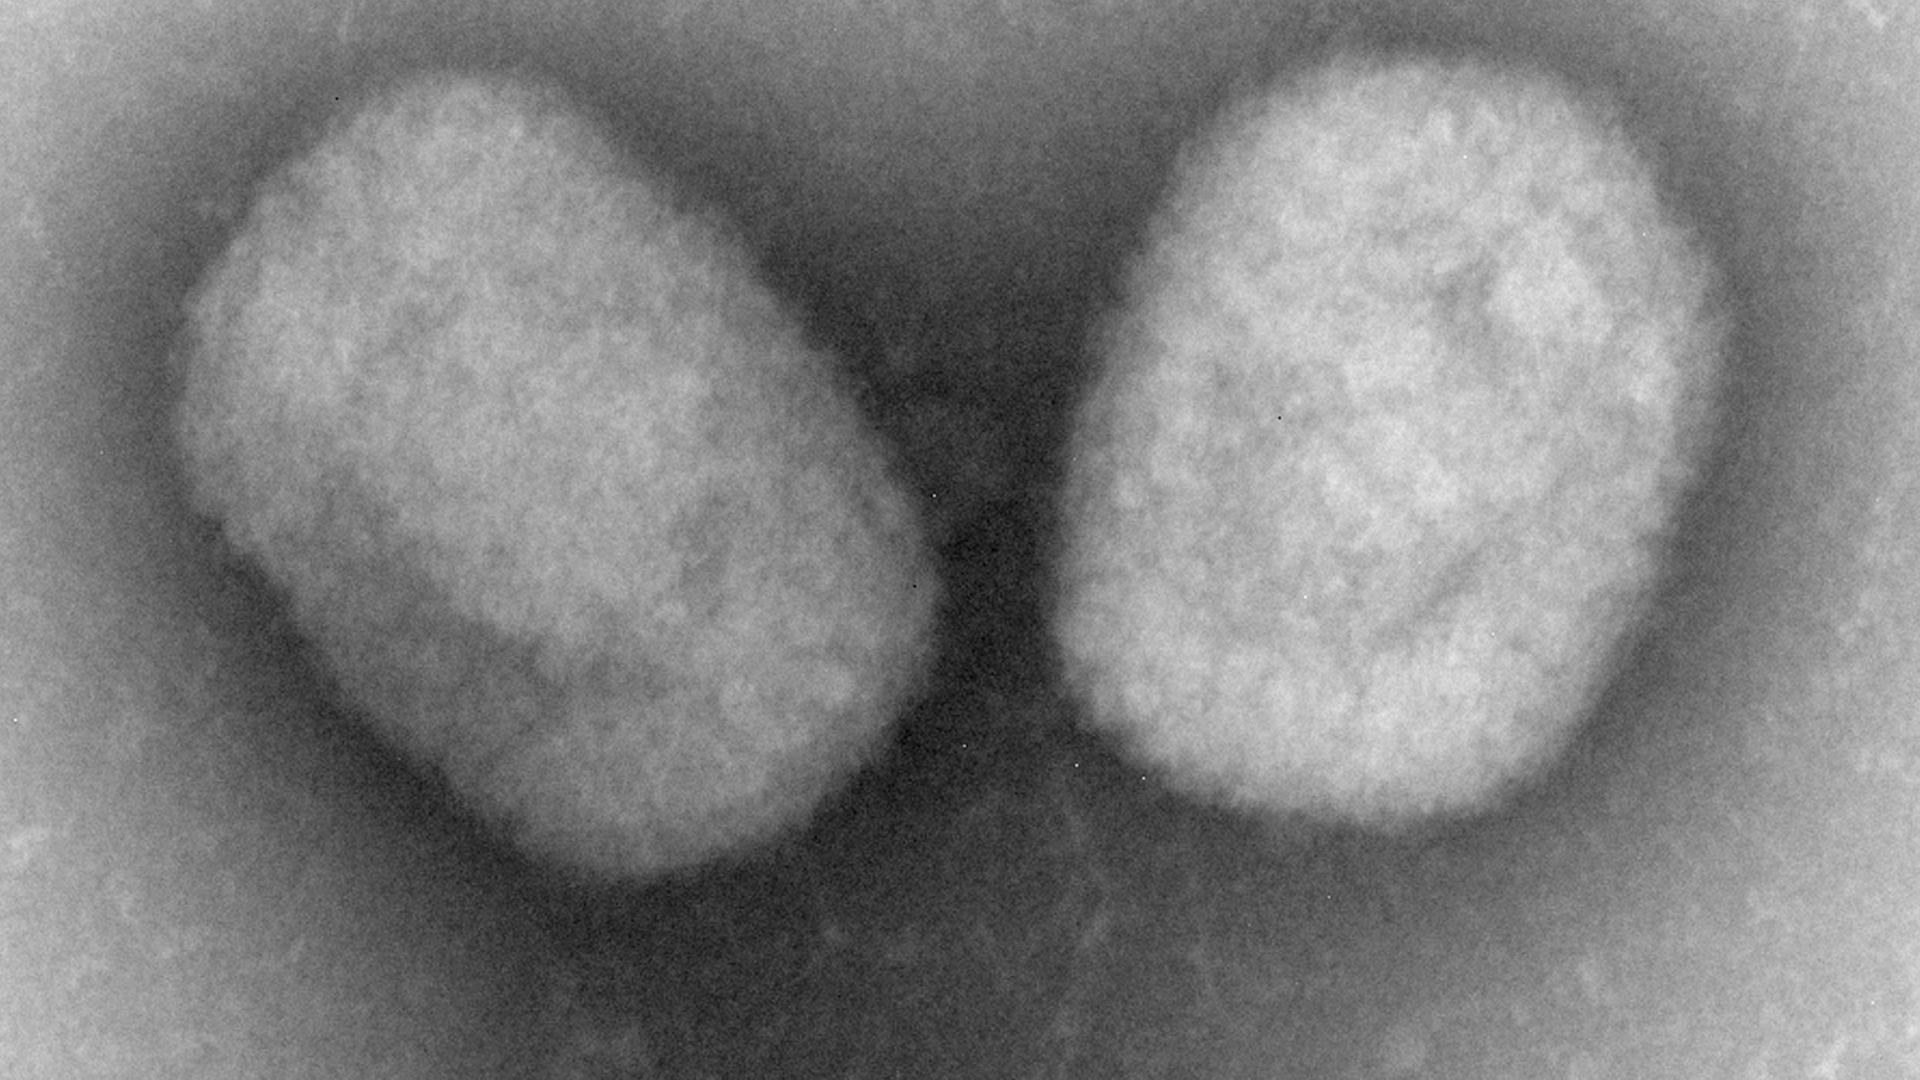 Das Bild zeigt eine Mikroskopaufnahmen von Affenpocken